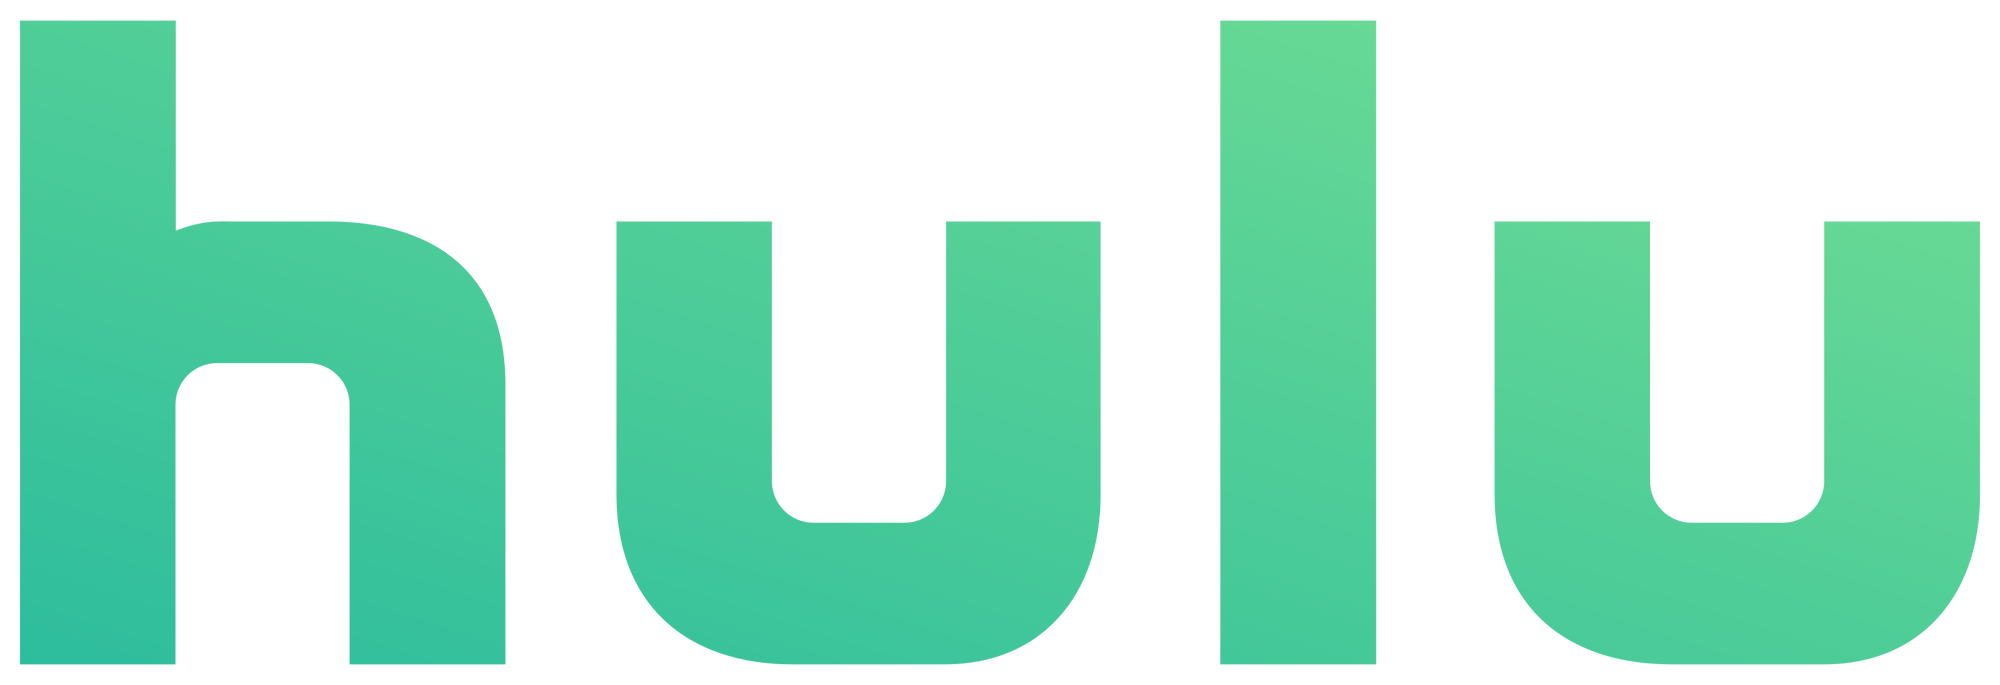 Hulu Logo PNG Image